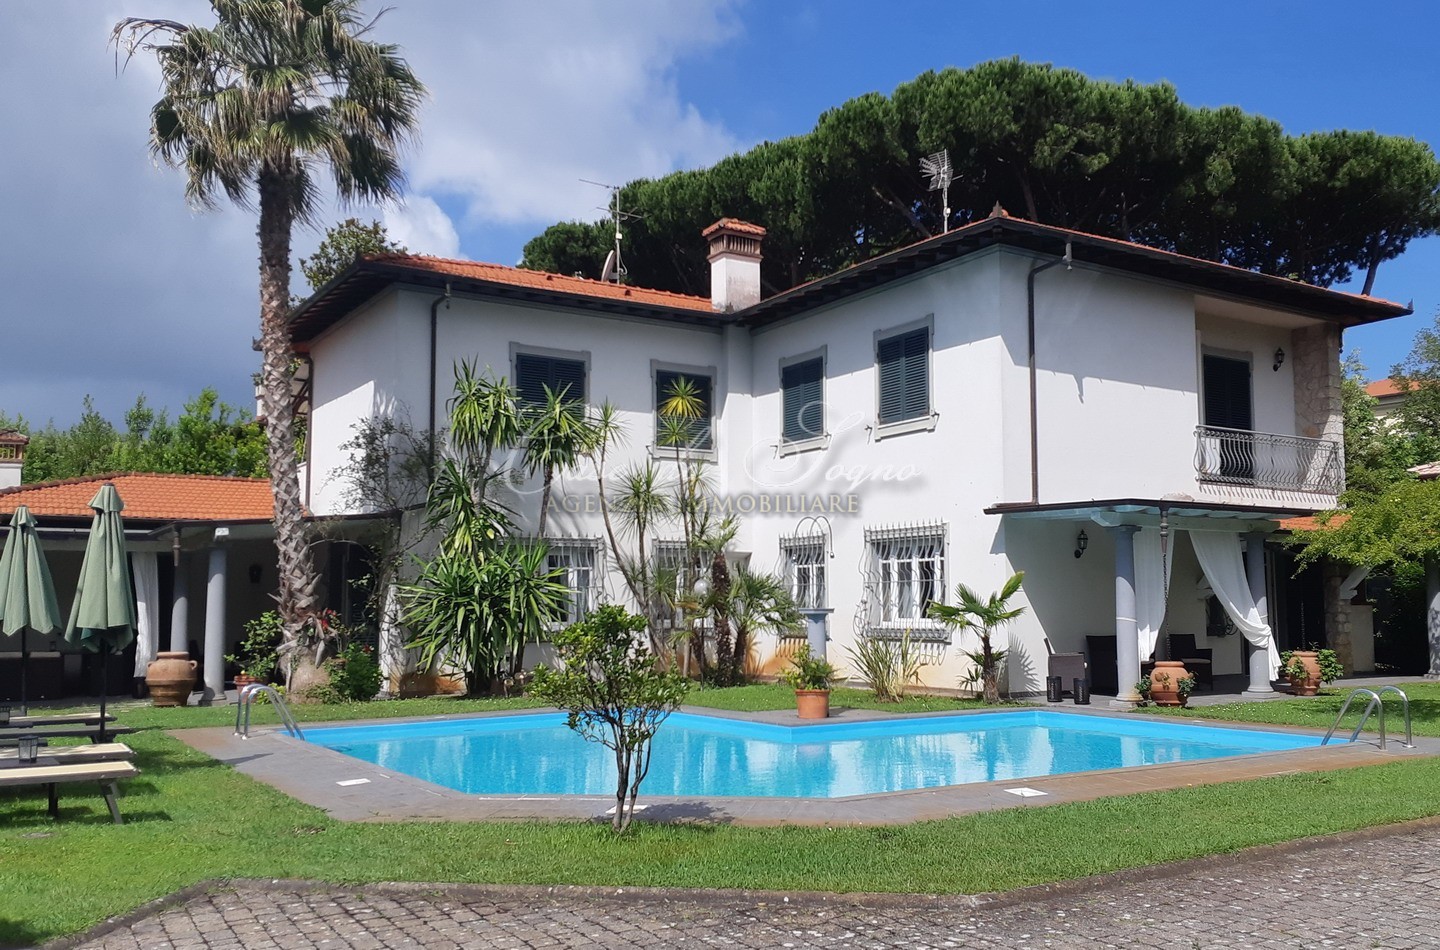 143 - cover Villa grazia